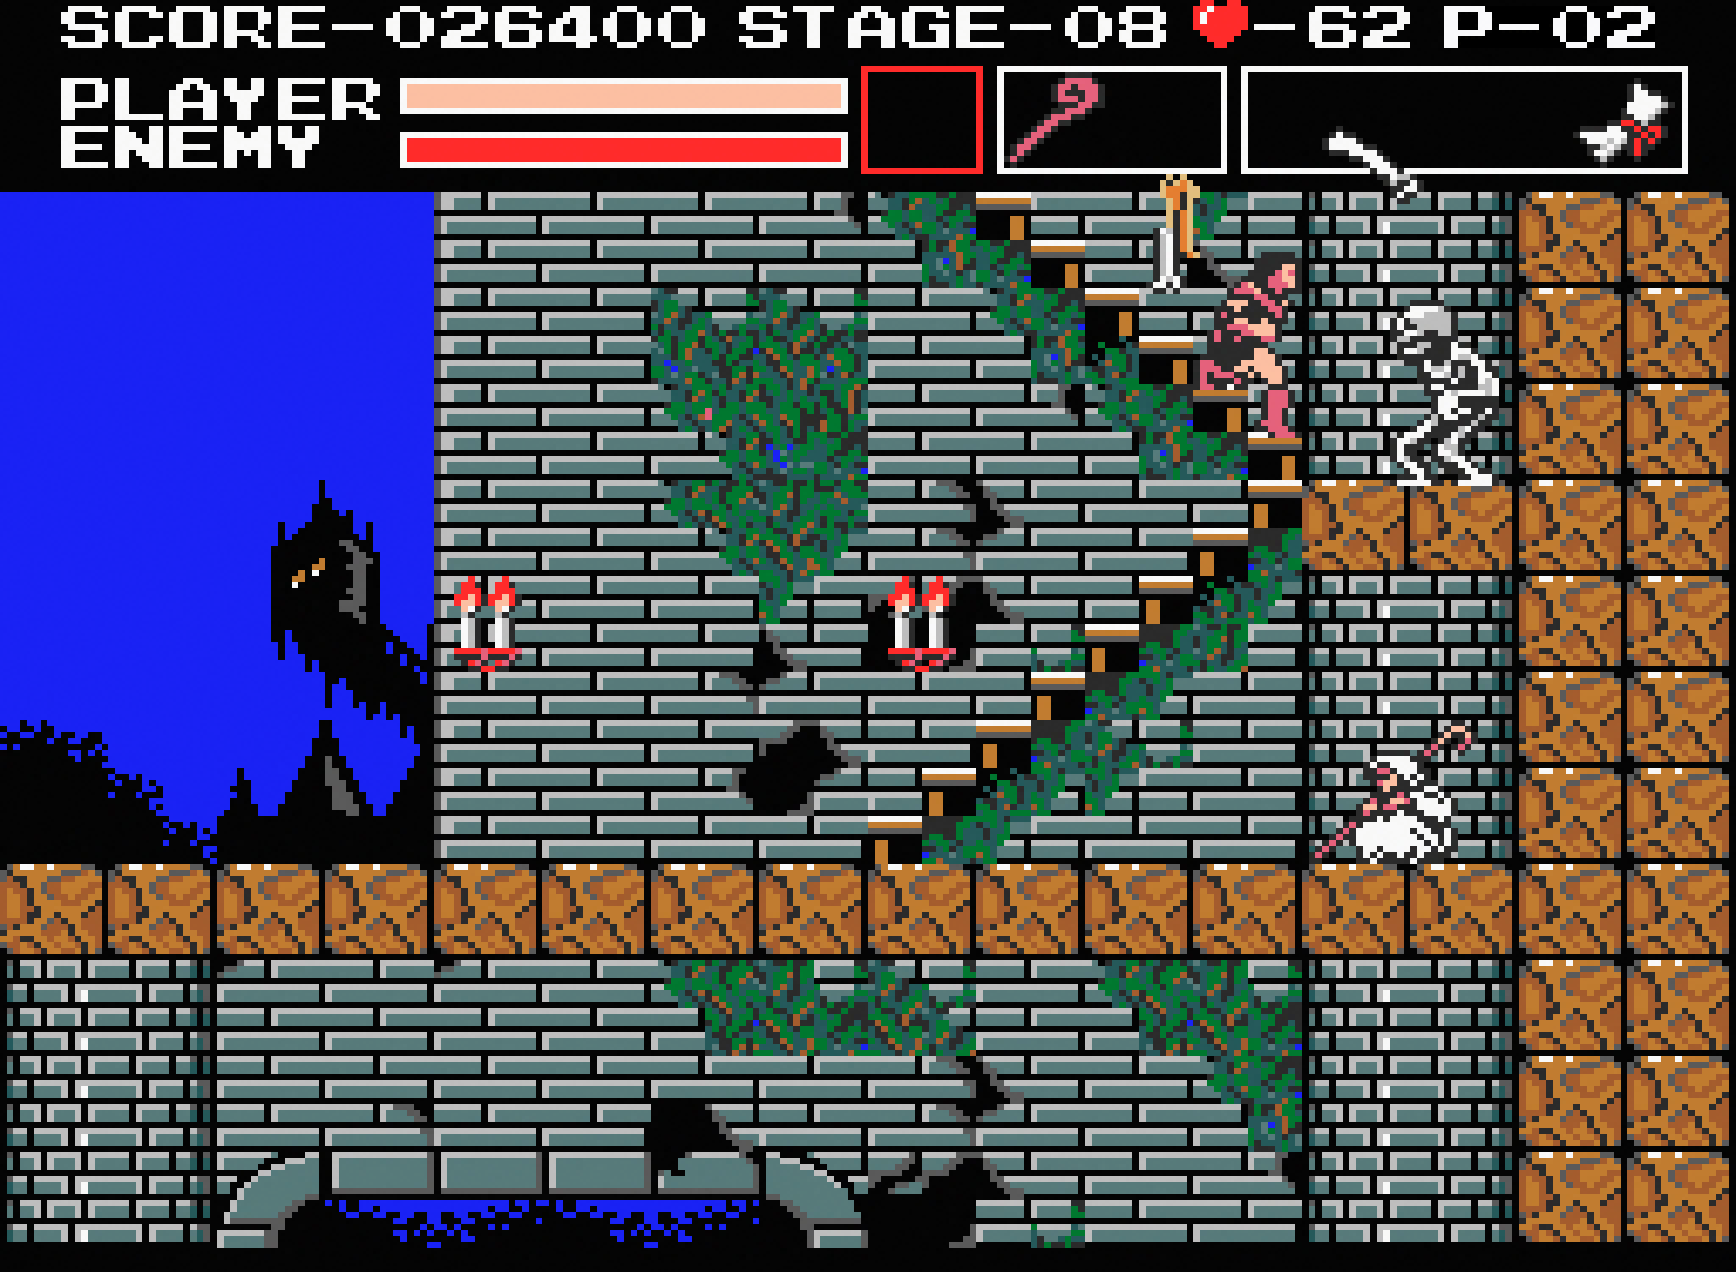 悪魔城ドラキュラ for MSX2 (C)1986 コナミ